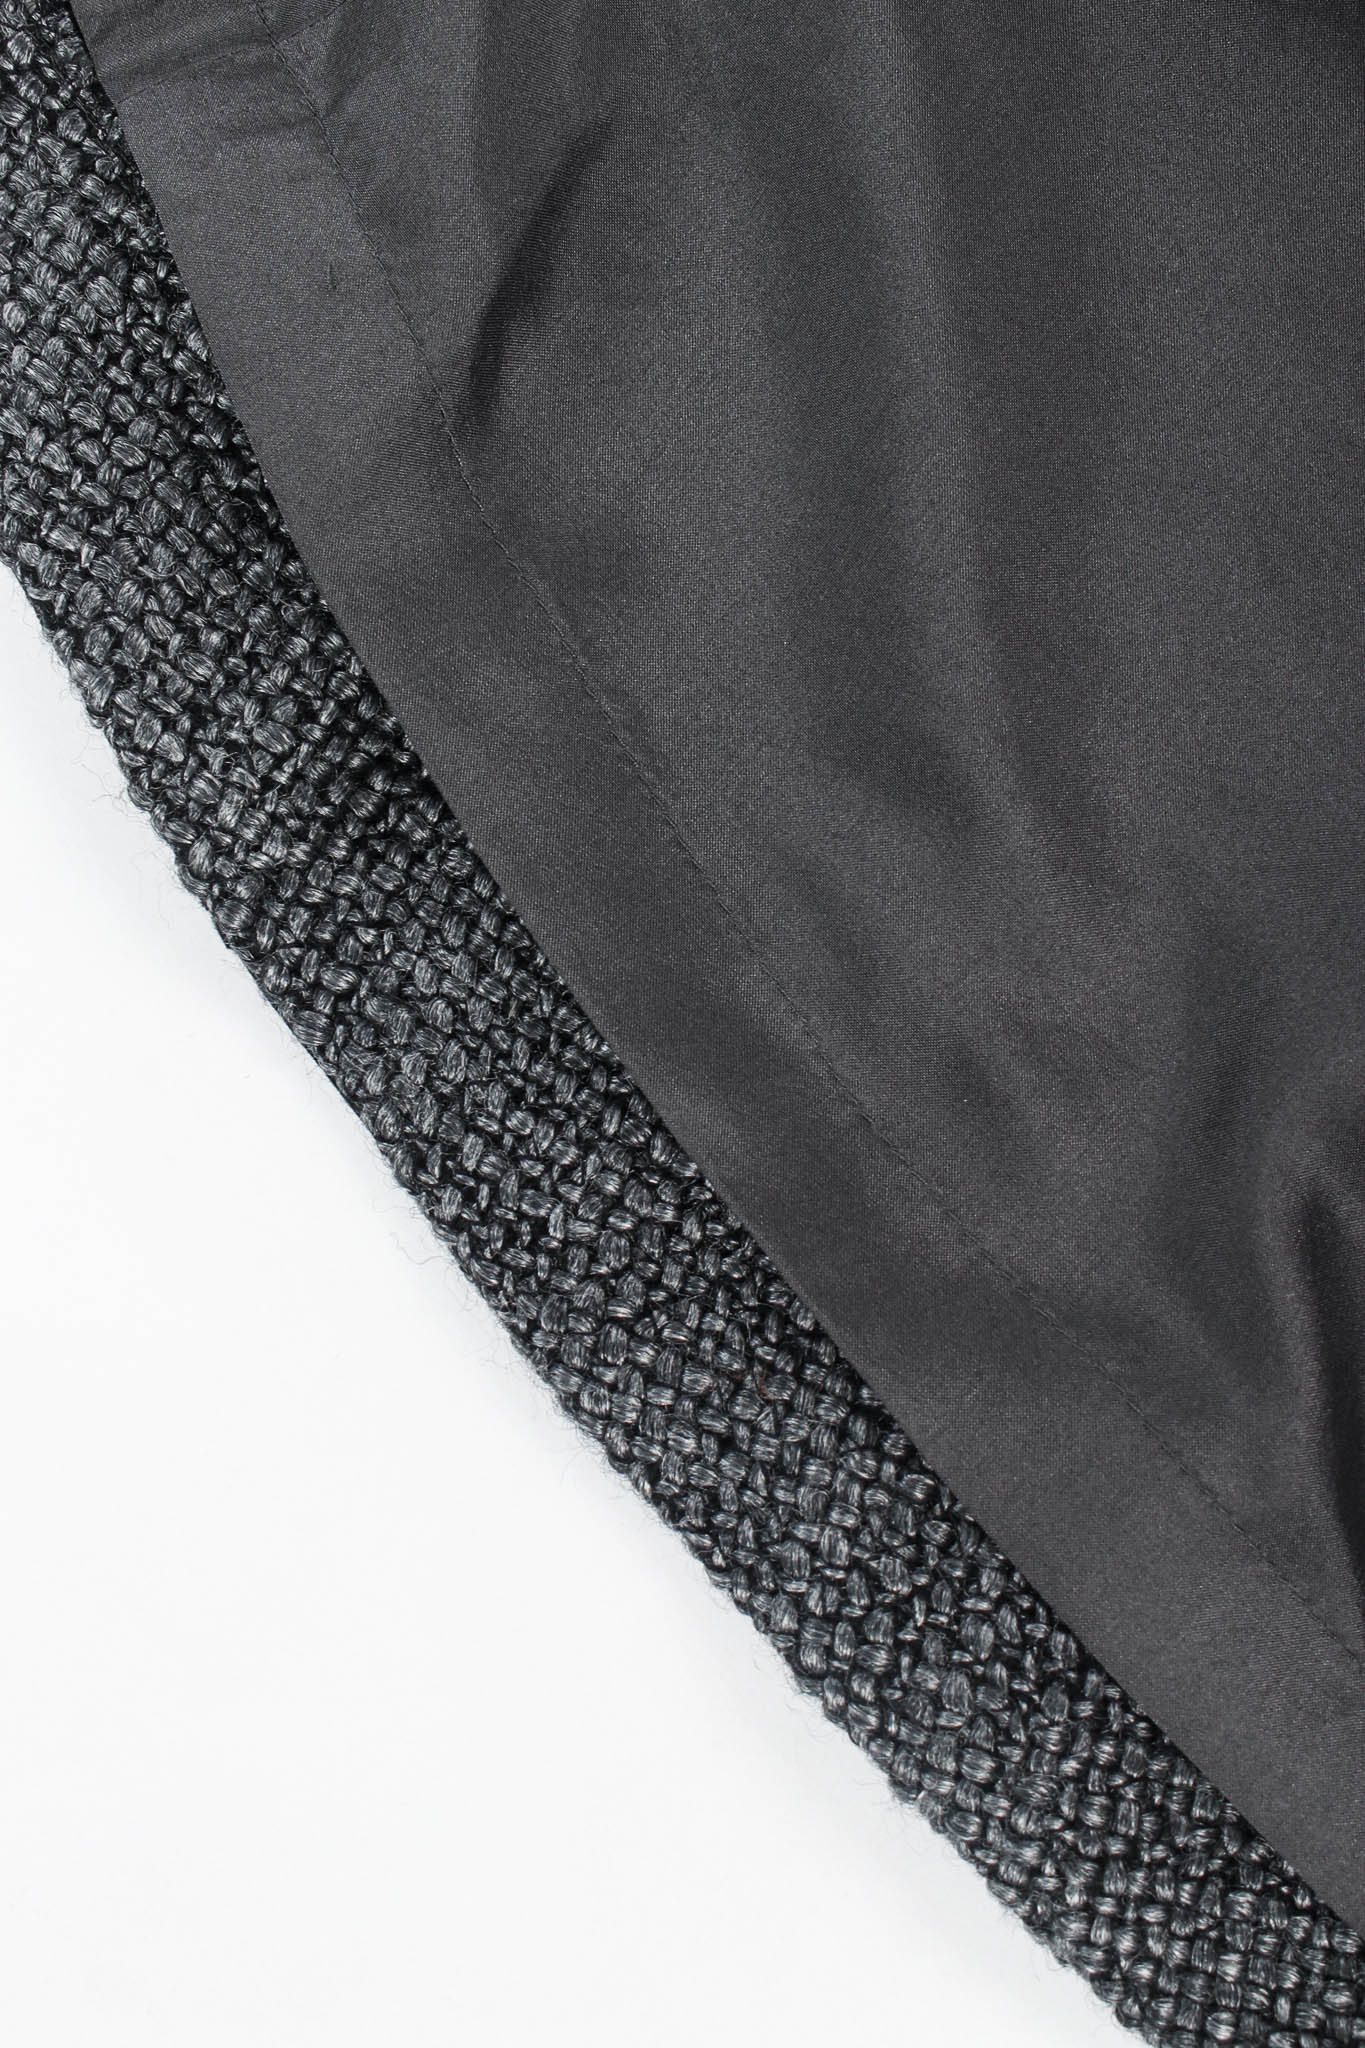 Vintage Chanel Tweed Woven Wool Top & Skirt Set reverse hem/liner @ Recess Los Angeles